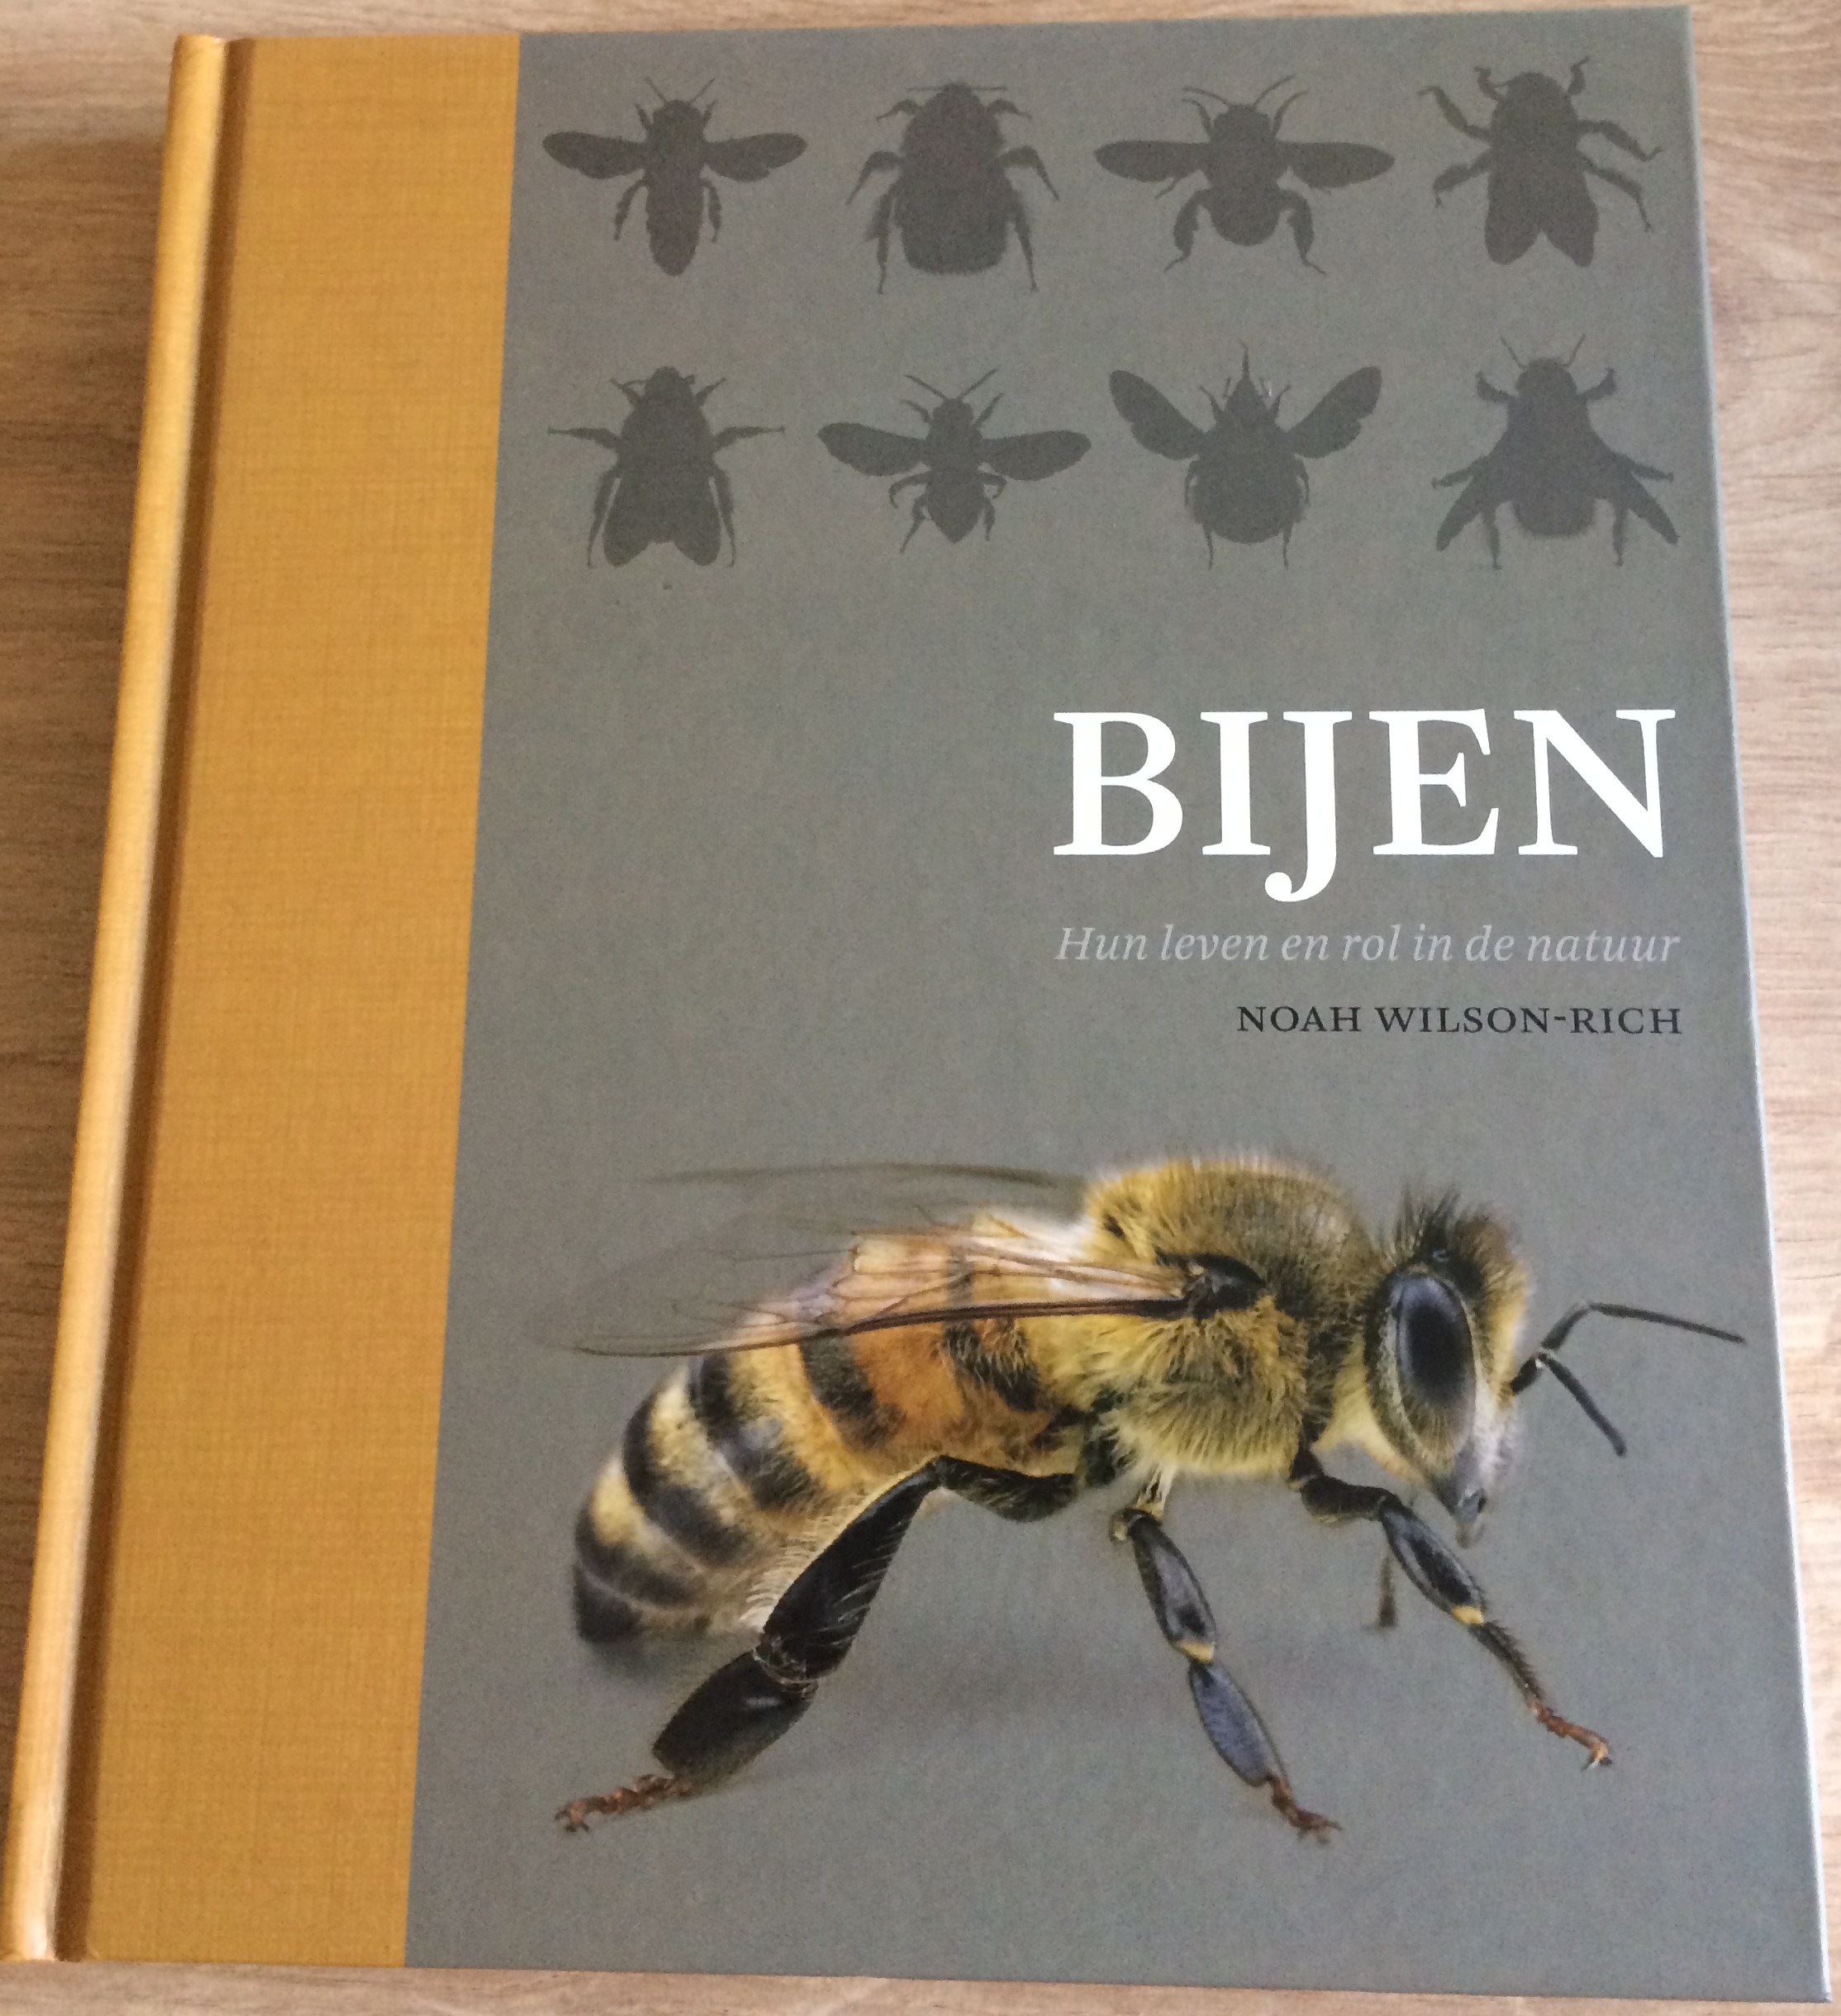 Het boek Bijen en hun leven en rol in de natuur kopen bij Imkerij De Linde